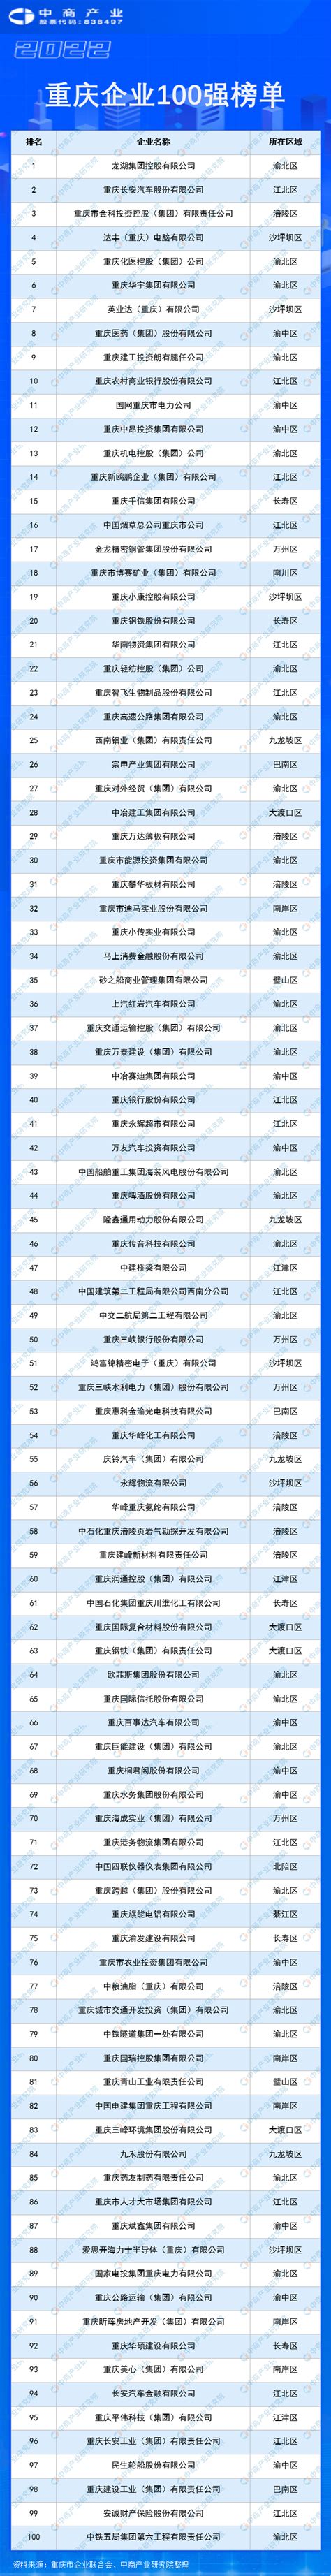 重庆市公布2018年度工业“双百企业”名单